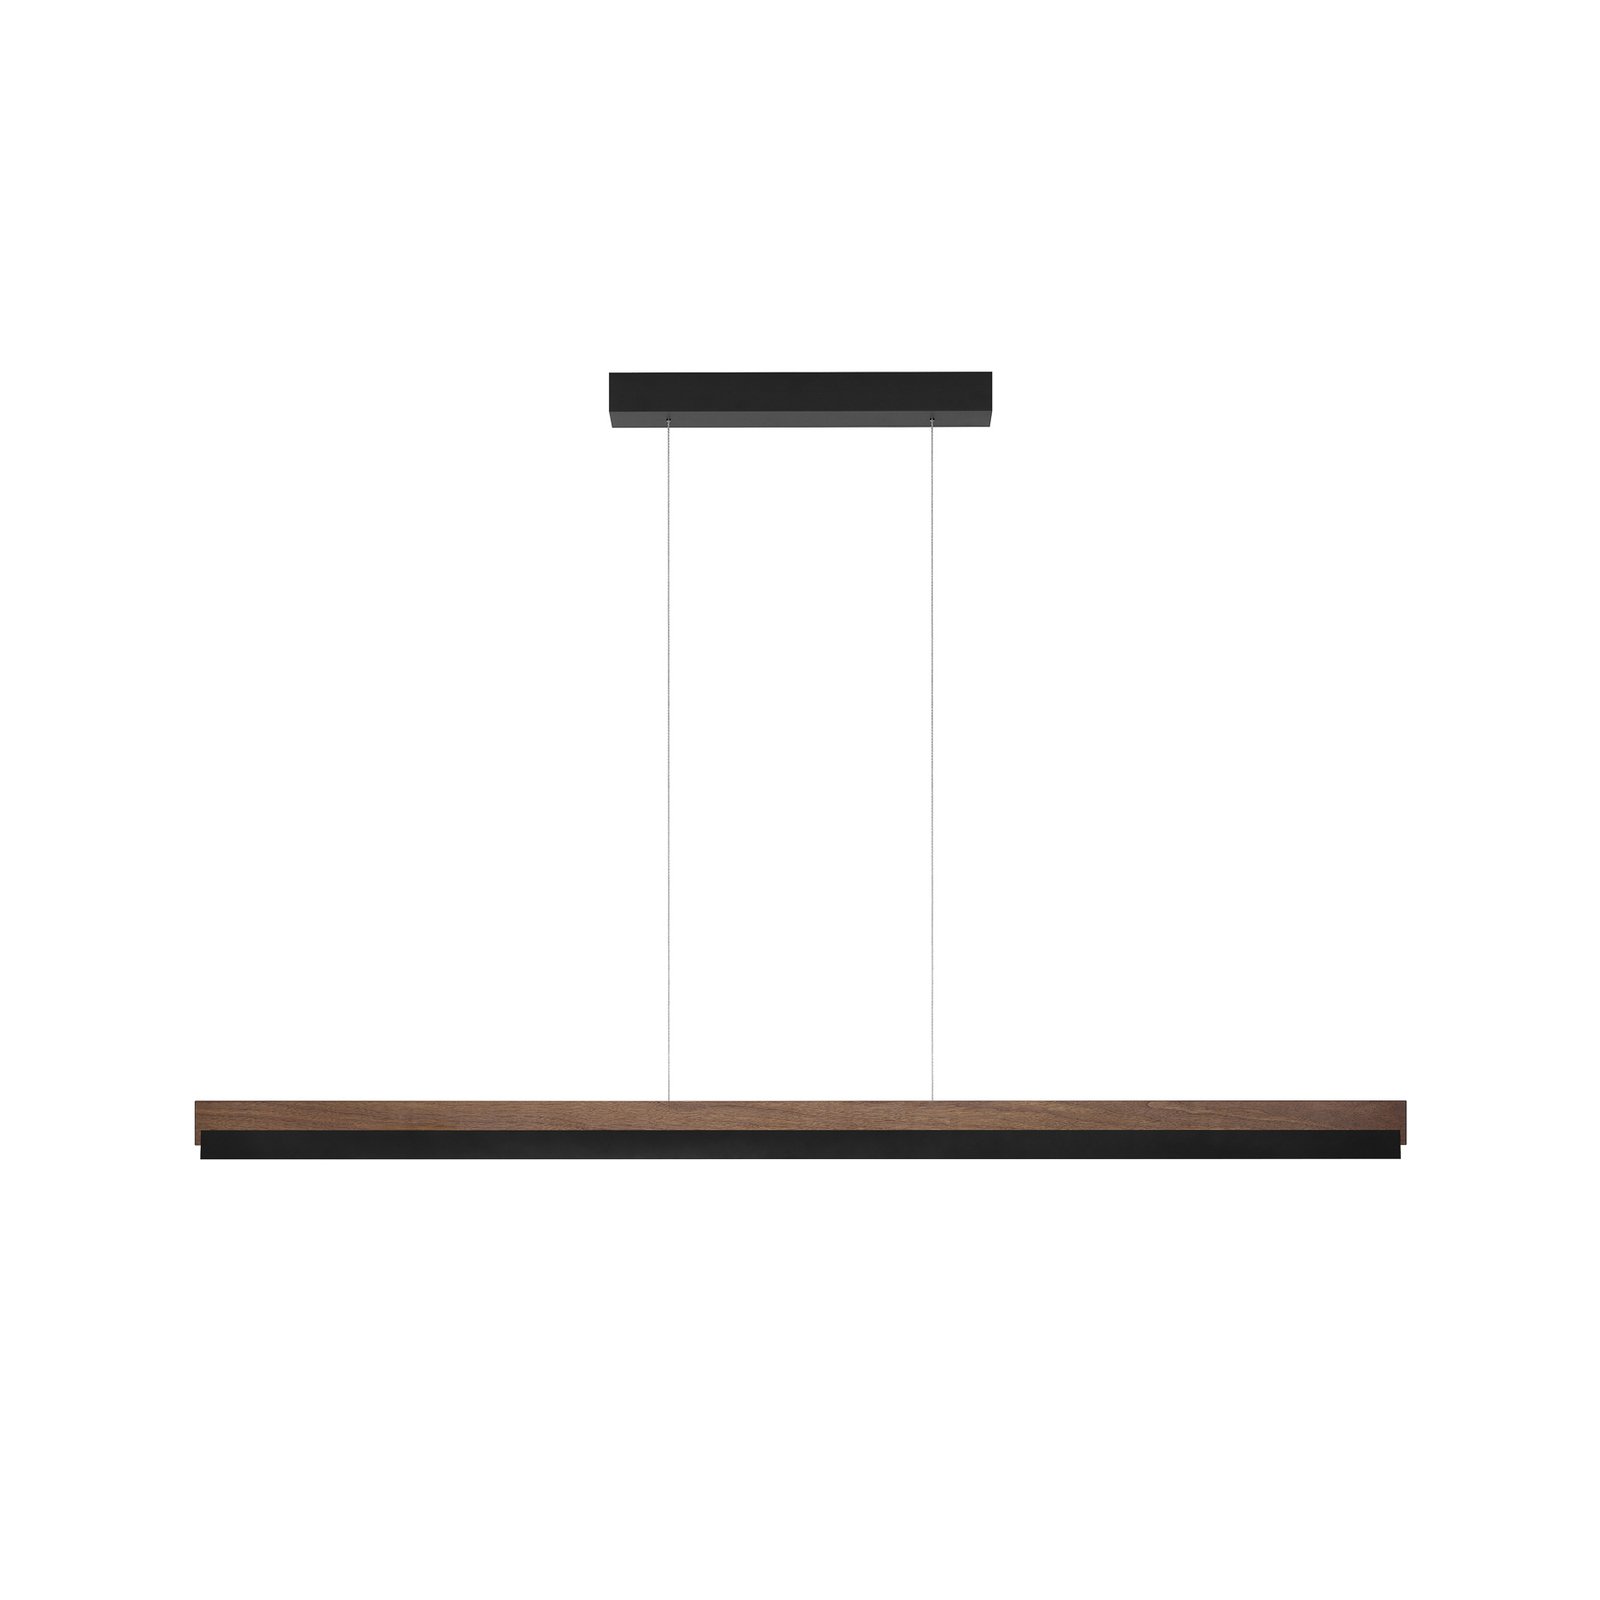 Quitani hanglamp Keijo, zwart/noot, lengte 143 cm